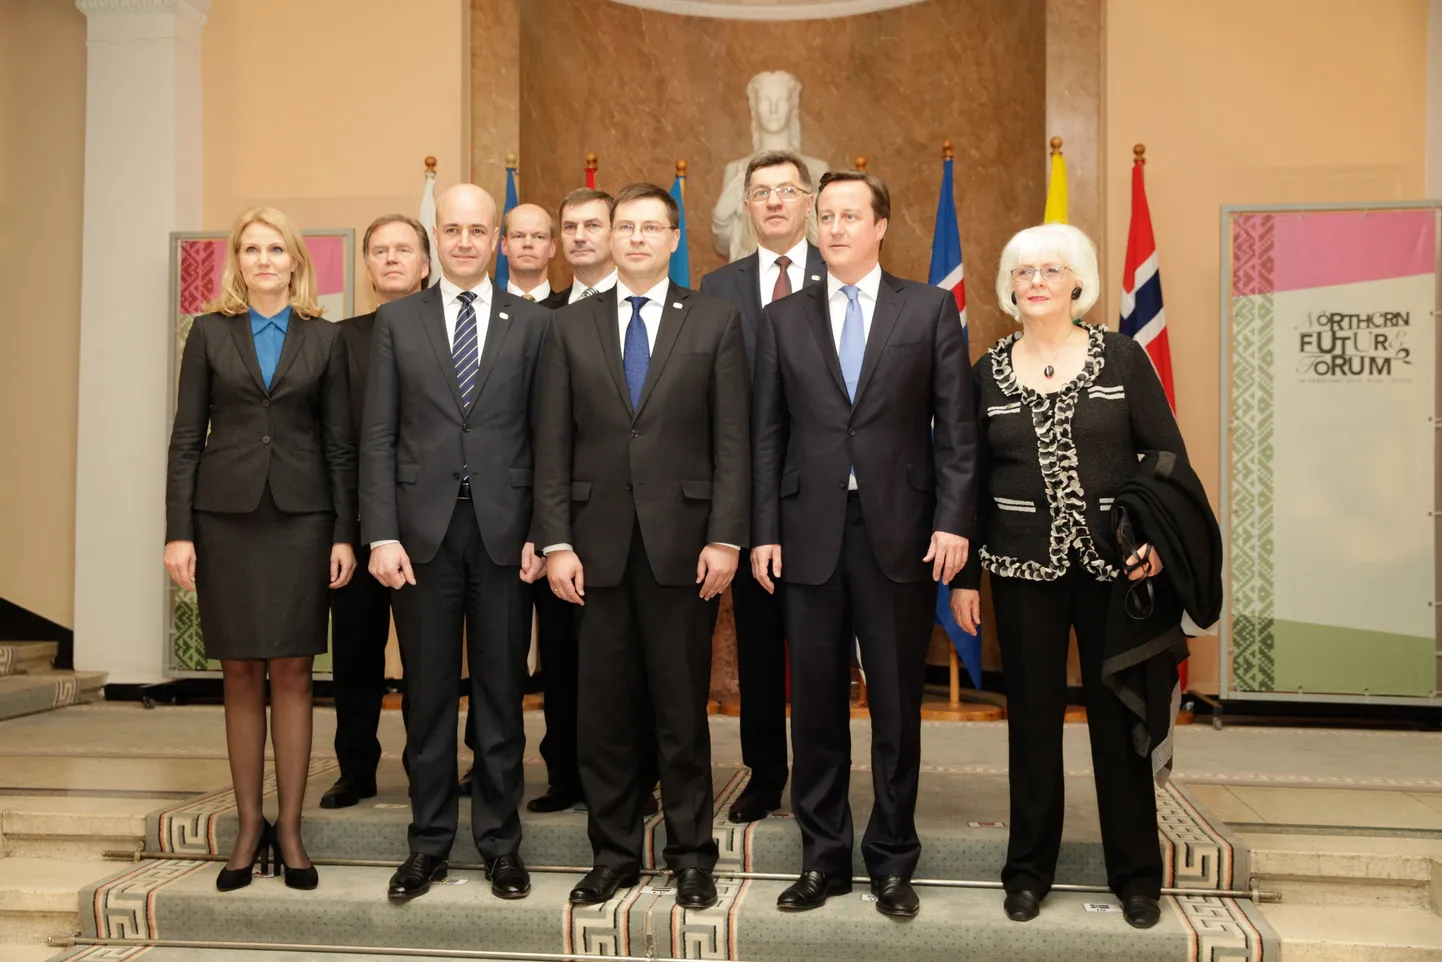 Põhja- ja Baltimaade ning Briti peaministri kohtumine Riias Northern Future Forum mitteformaalse koostööformaadi raames